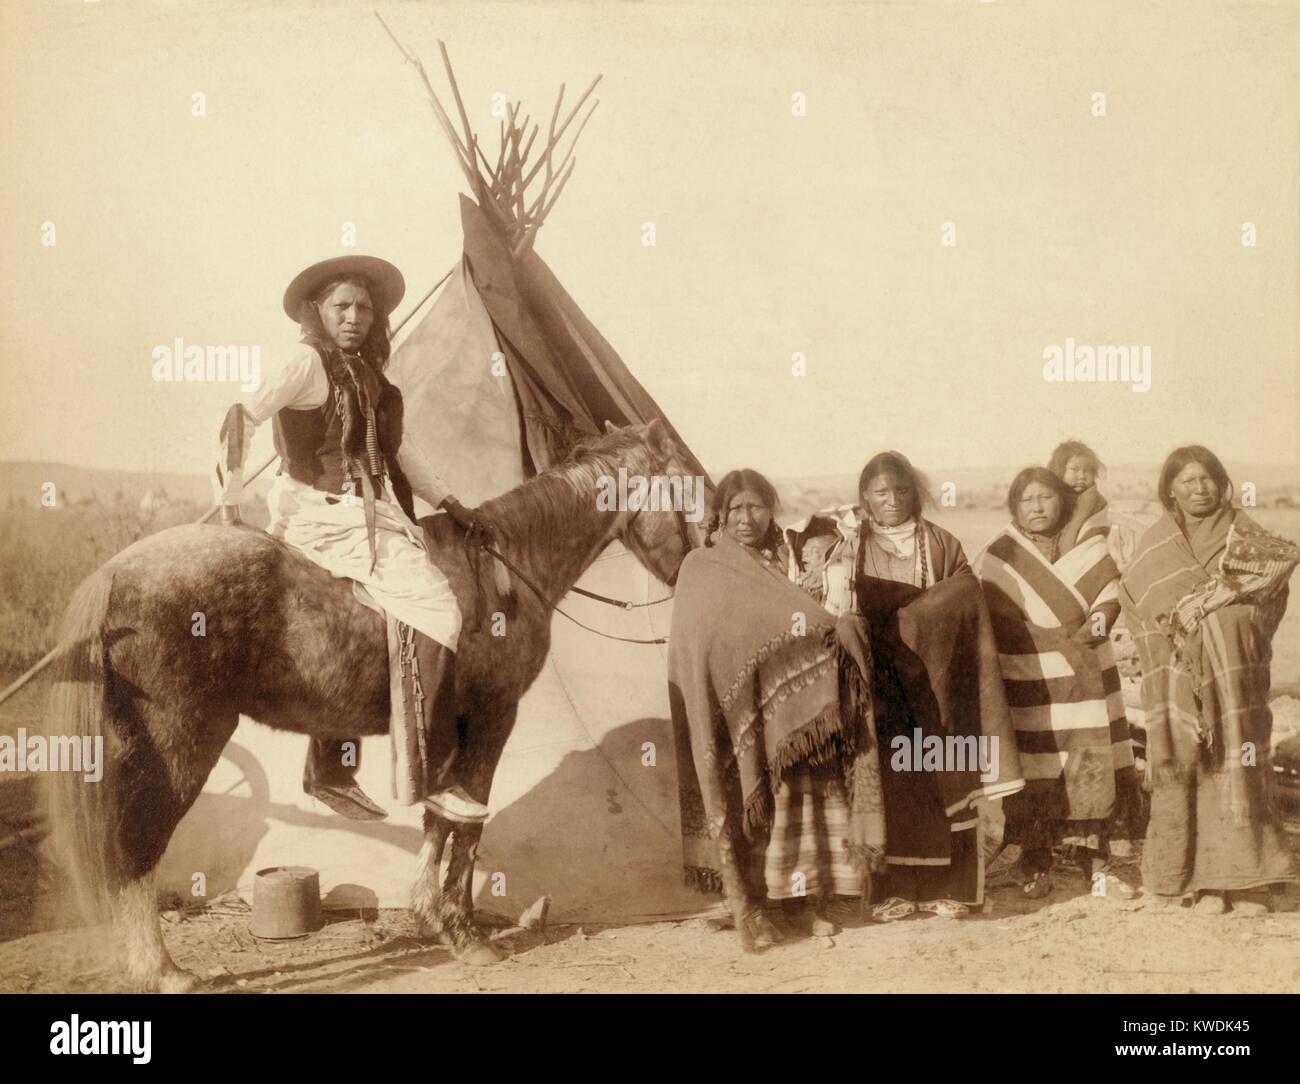 Lakota Frauen, drei mit Babys Kleinkinder in Hängegestelle und a Lakota Mann auf dem Pferd. Foto auf Pine Ridge Reservat nach dem Wounded Knee Massacre. Foto von John Grabill, Jan. 1891 (BSLOC 2017 18 35) Stockfoto